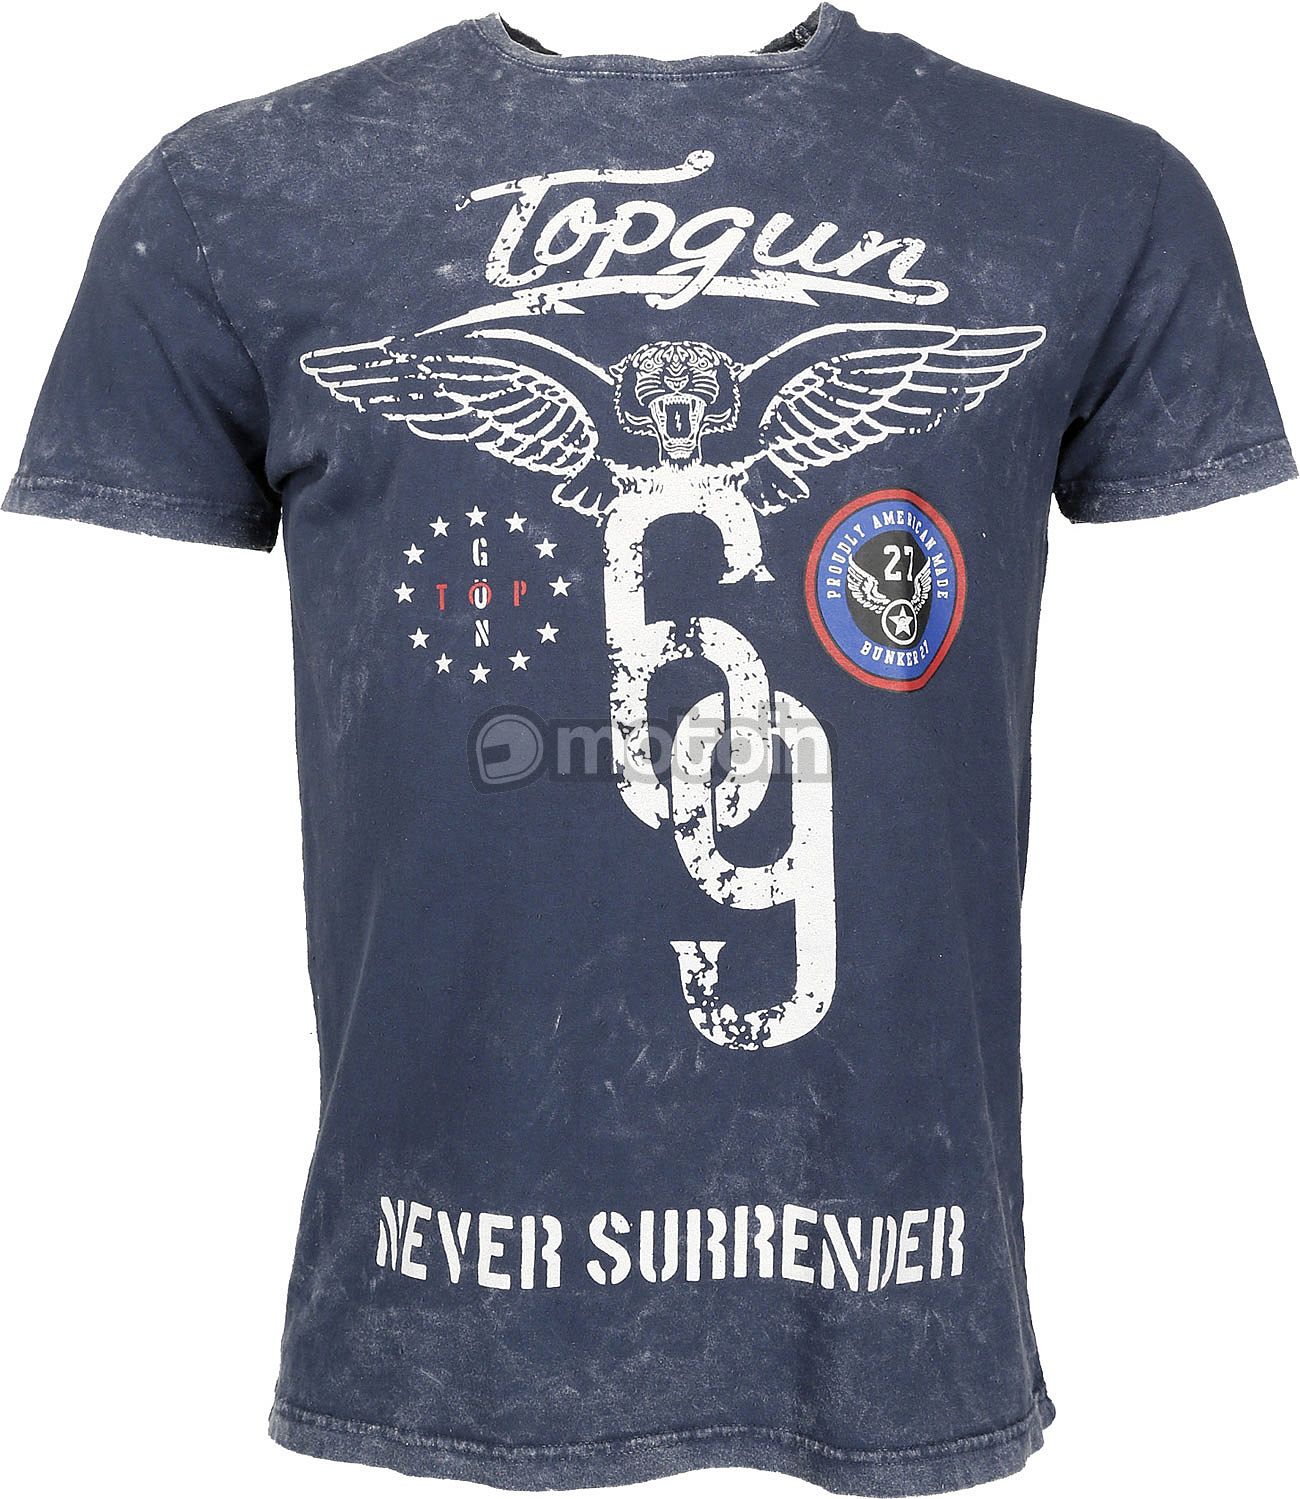 Top Gun Flags, T-shirt